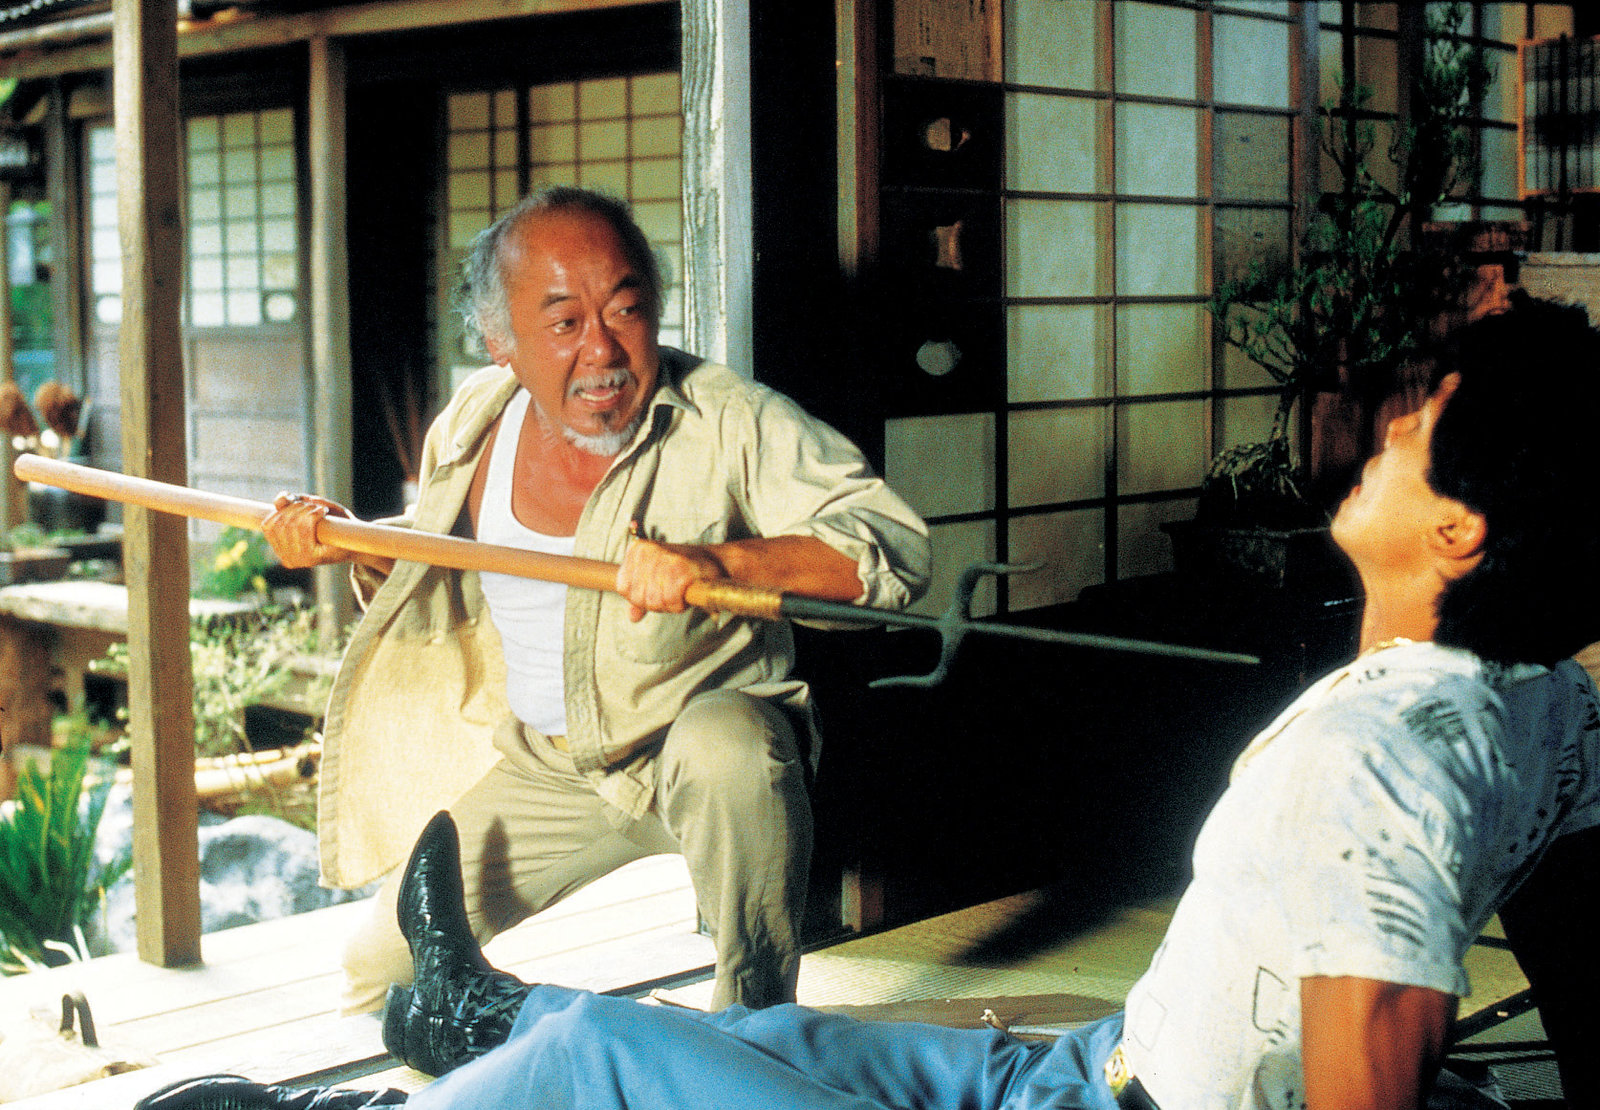 Karate Kid 2 - Entscheidung in Okinawa (blu-ray)